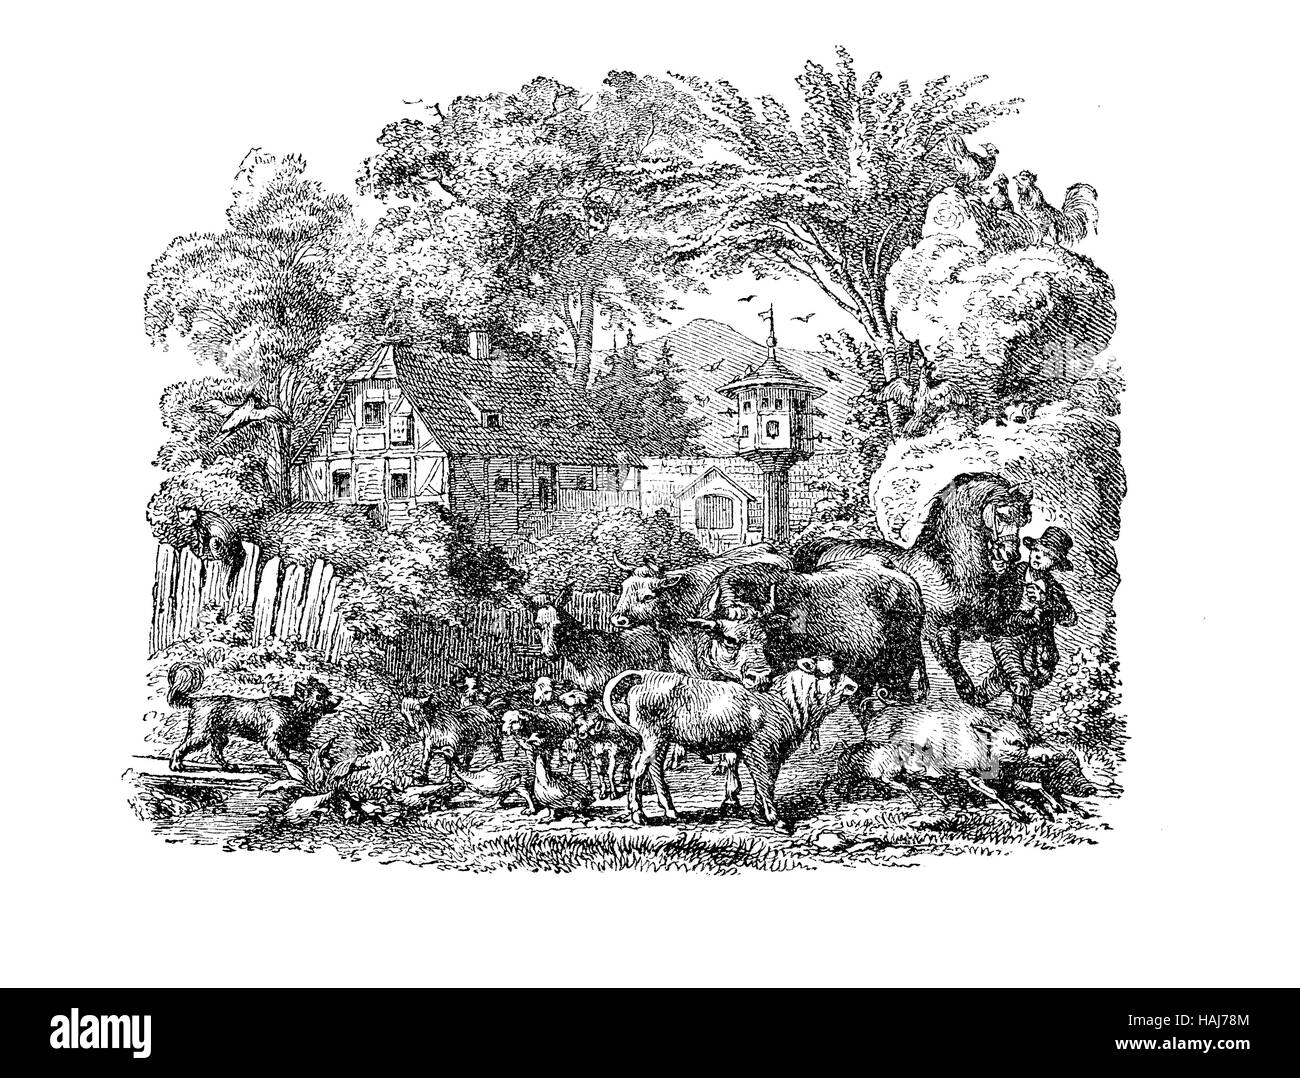 La représentation idyllique d'un mode de vie agricole, avec un jeune agriculteur entouré de toutes sortes d'animaux domestiques vivant dans la cour Banque D'Images